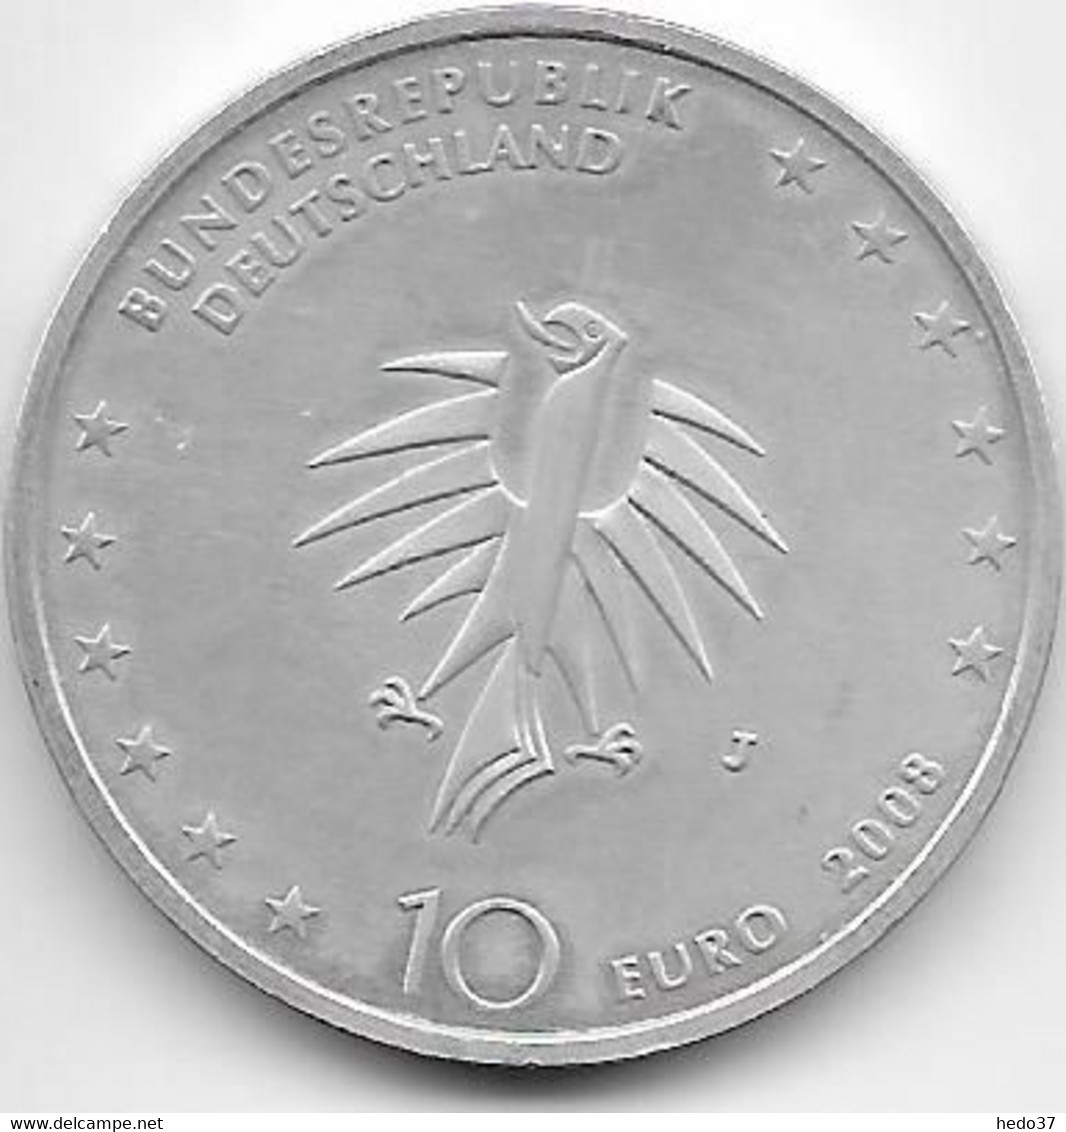 Allemagne - 10 Euro € 2008 - Argent - Herdenkingsmunt